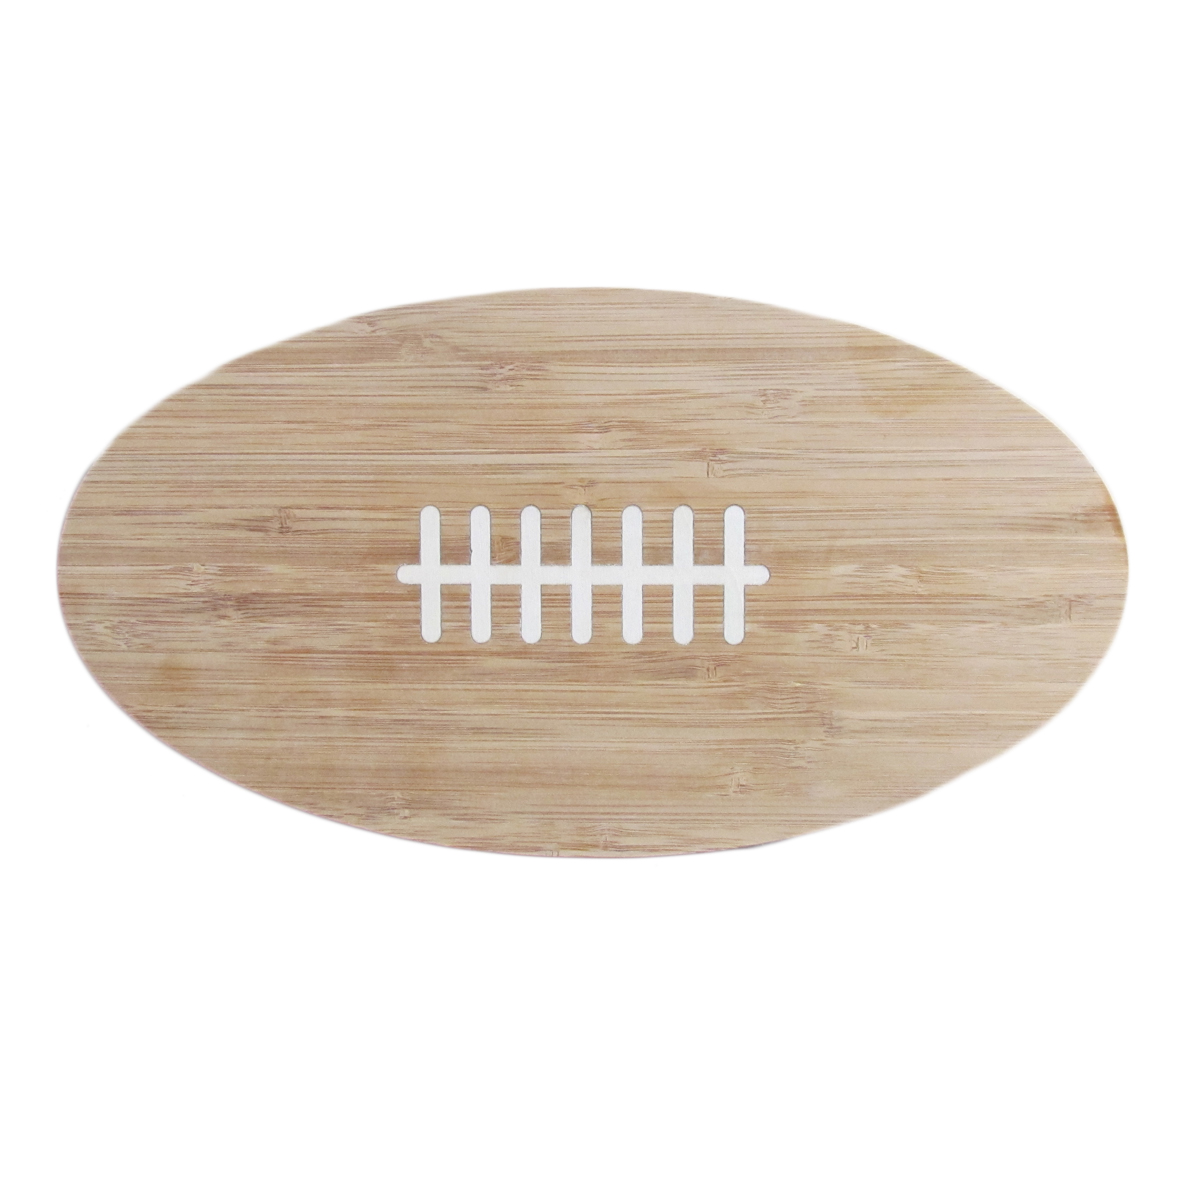 American Football Bamboo Cutting Board